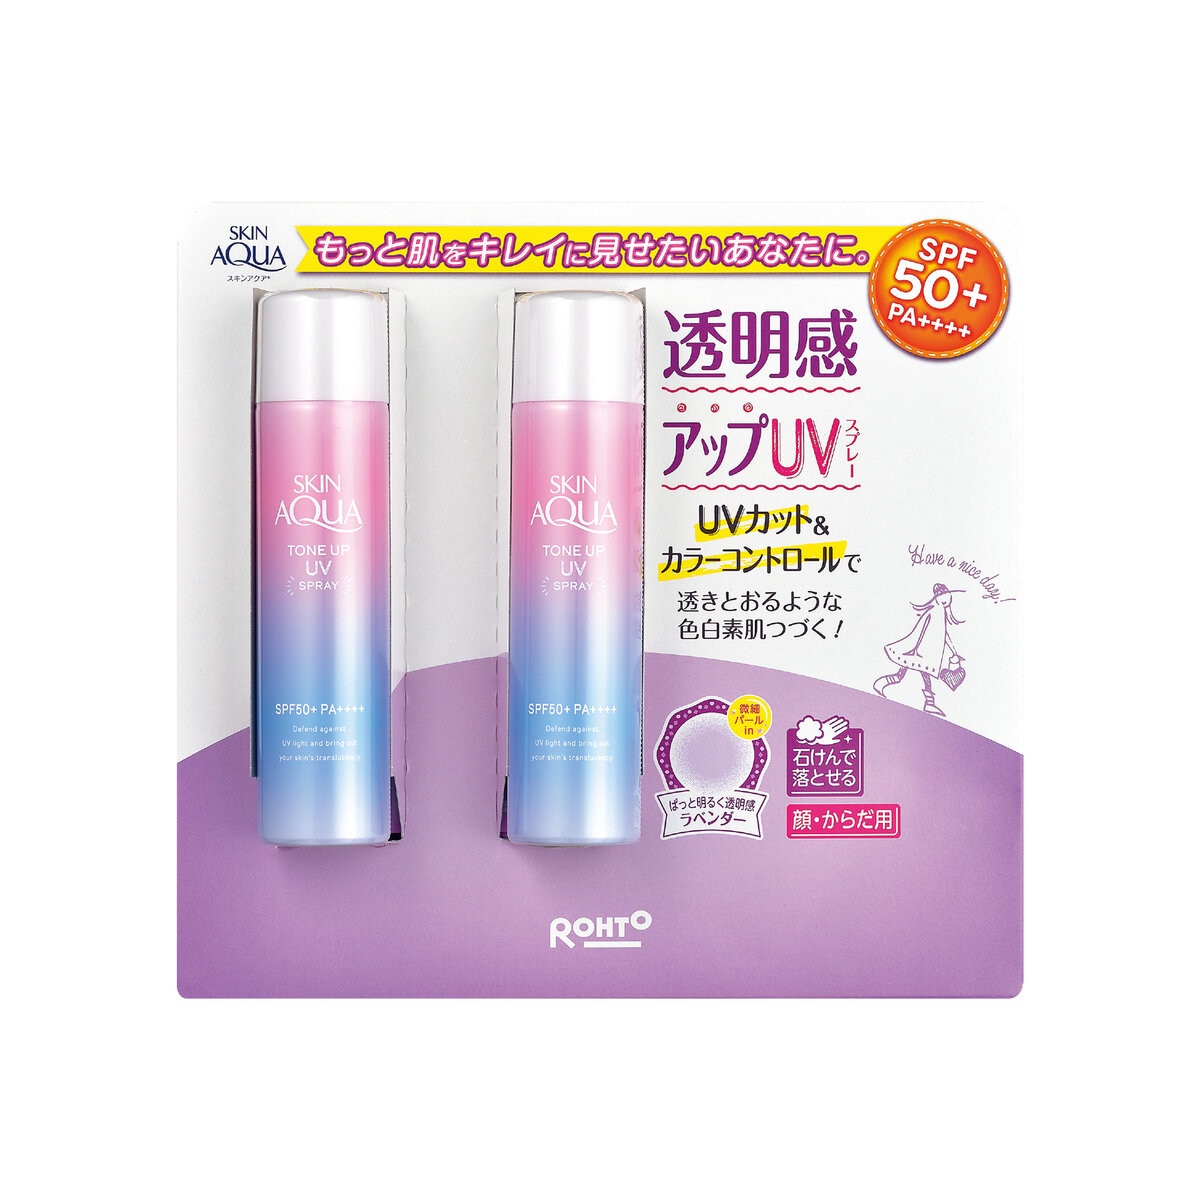 スキンアクア トーンアップ UVスプレー 70g x 2本セット | Costco Japan